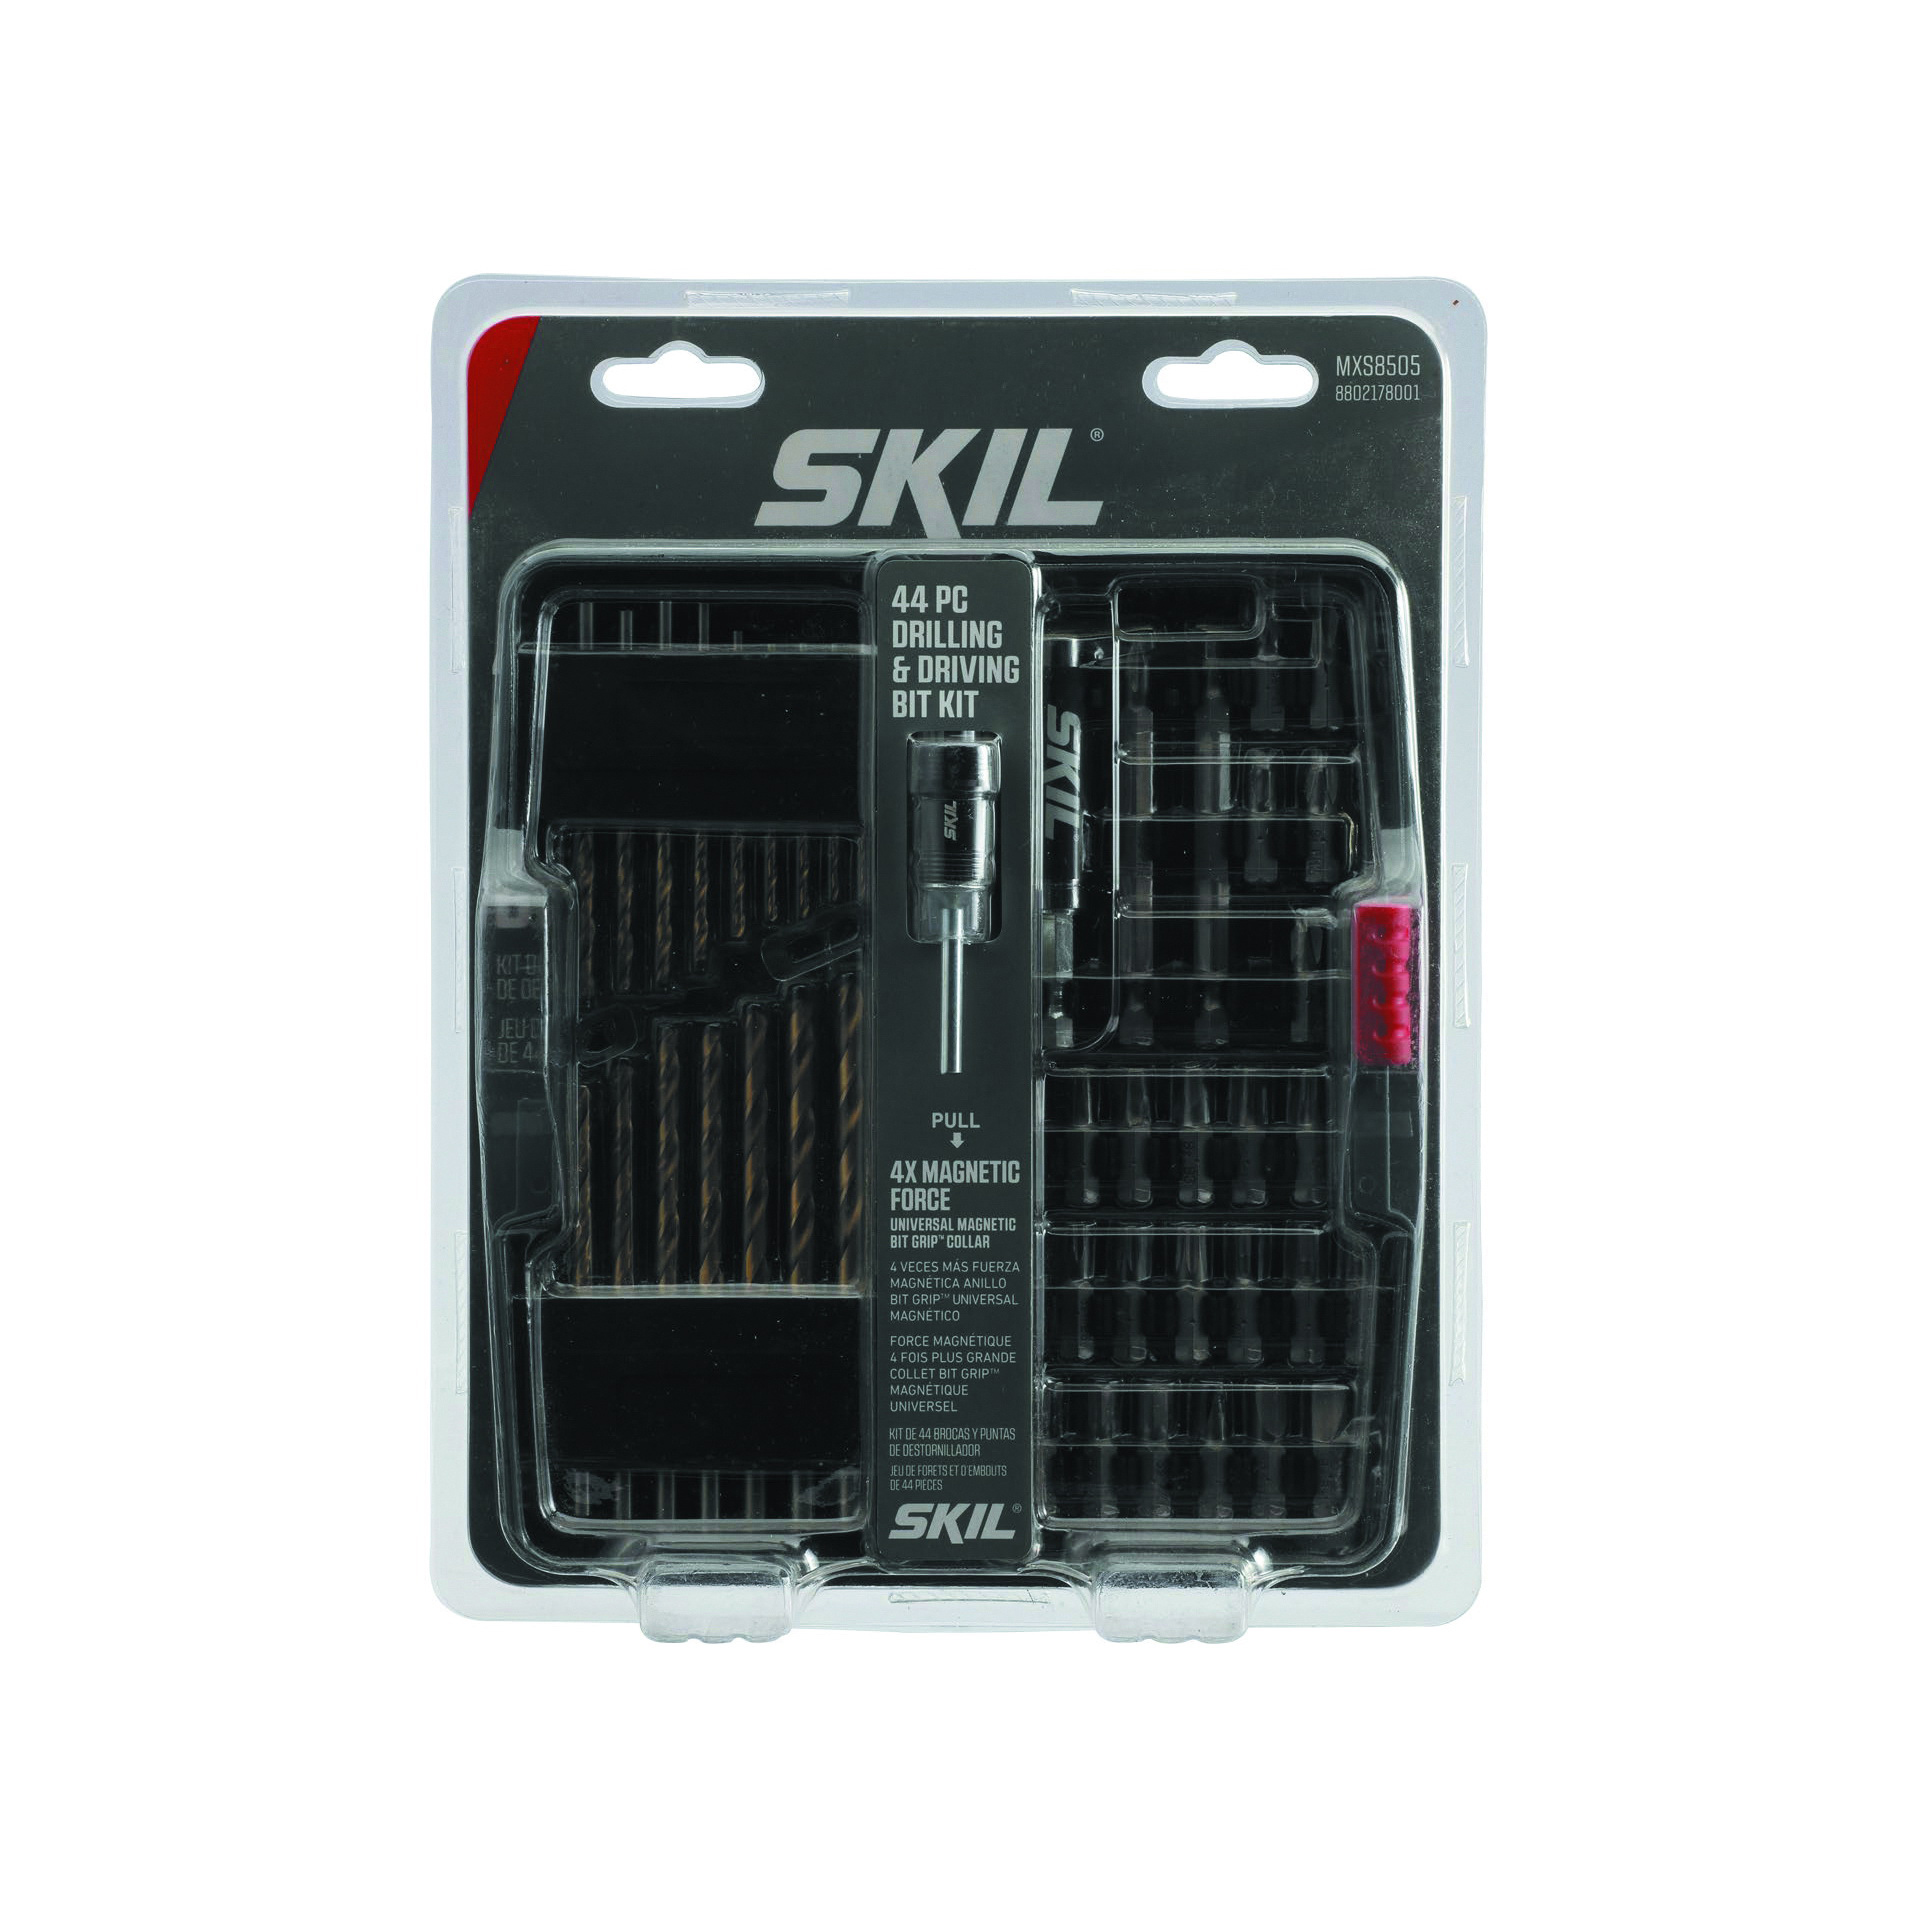 SKIL MXS8505 Drill Bit Set, 44-Piece, Steel